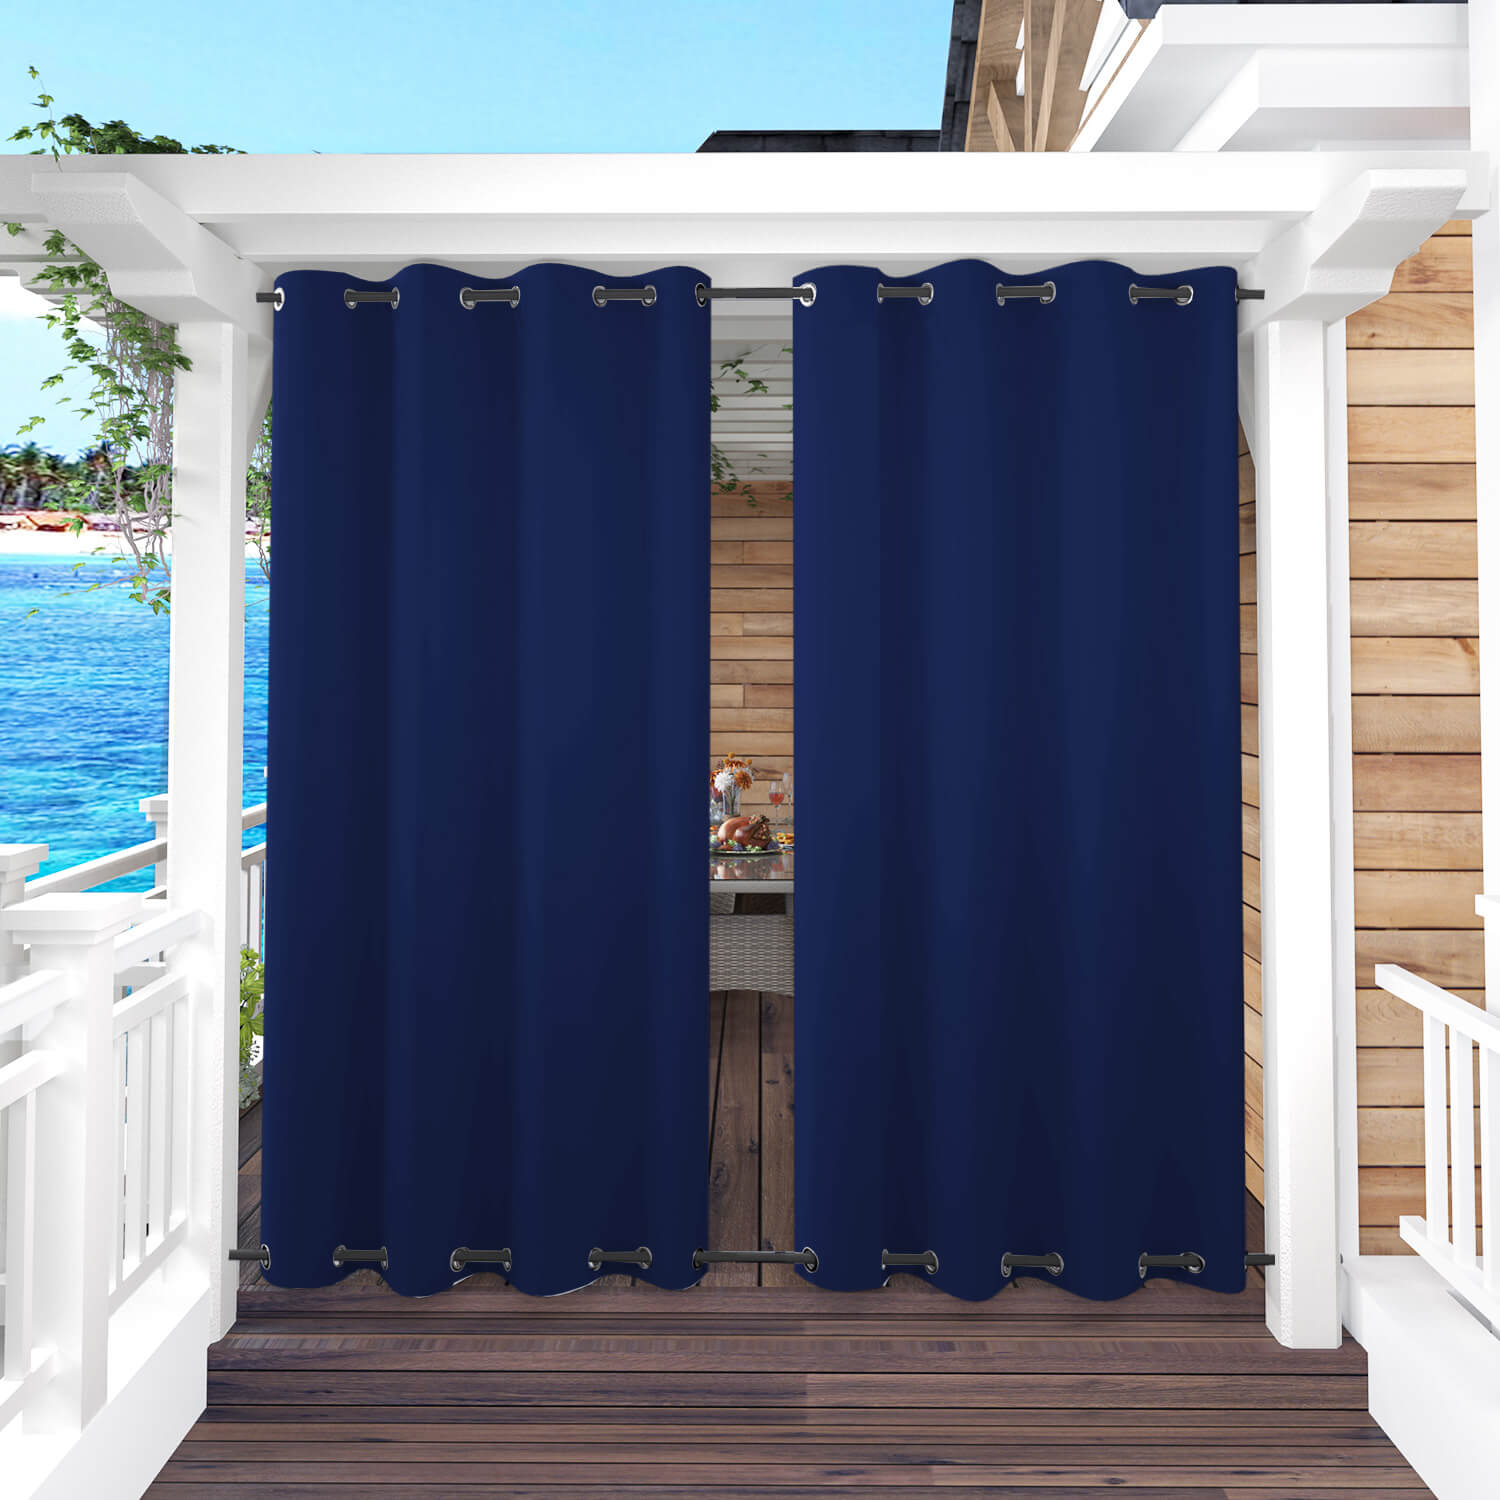 Snowcity Outdoor Curtains Waterproof Grommet Top & Bottom 1 Panel - Navy